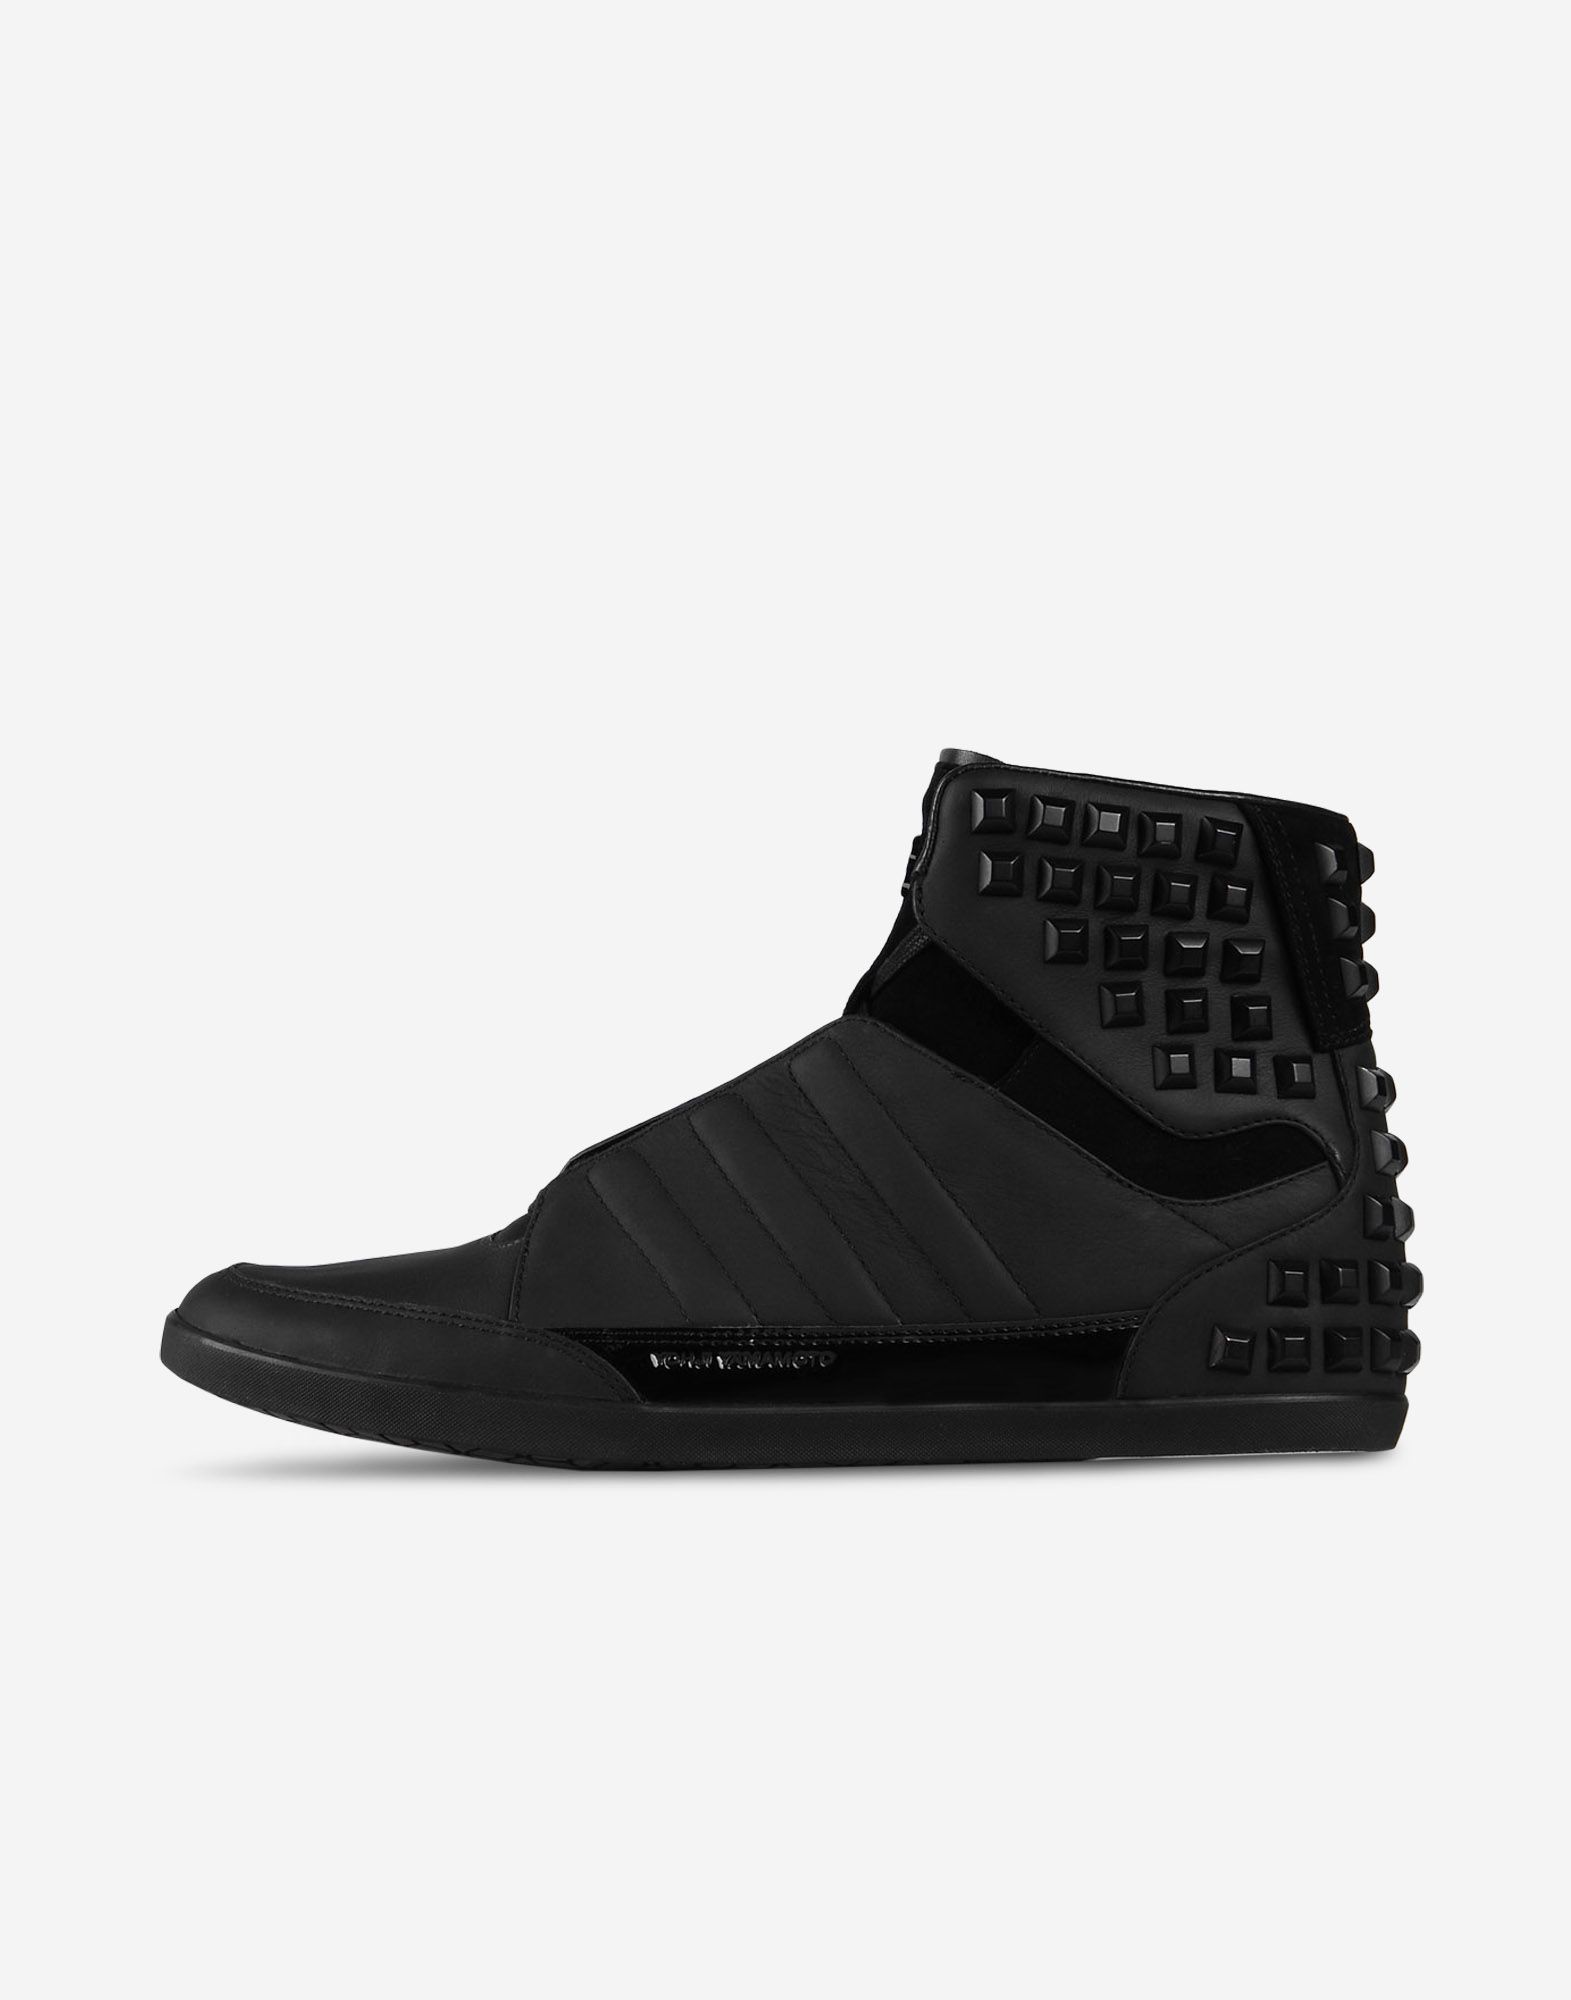 Y 3 Honja High ‎ ‎High Top Sneakers‎ ‎ ‎ | Adidas Y-3 Official Site